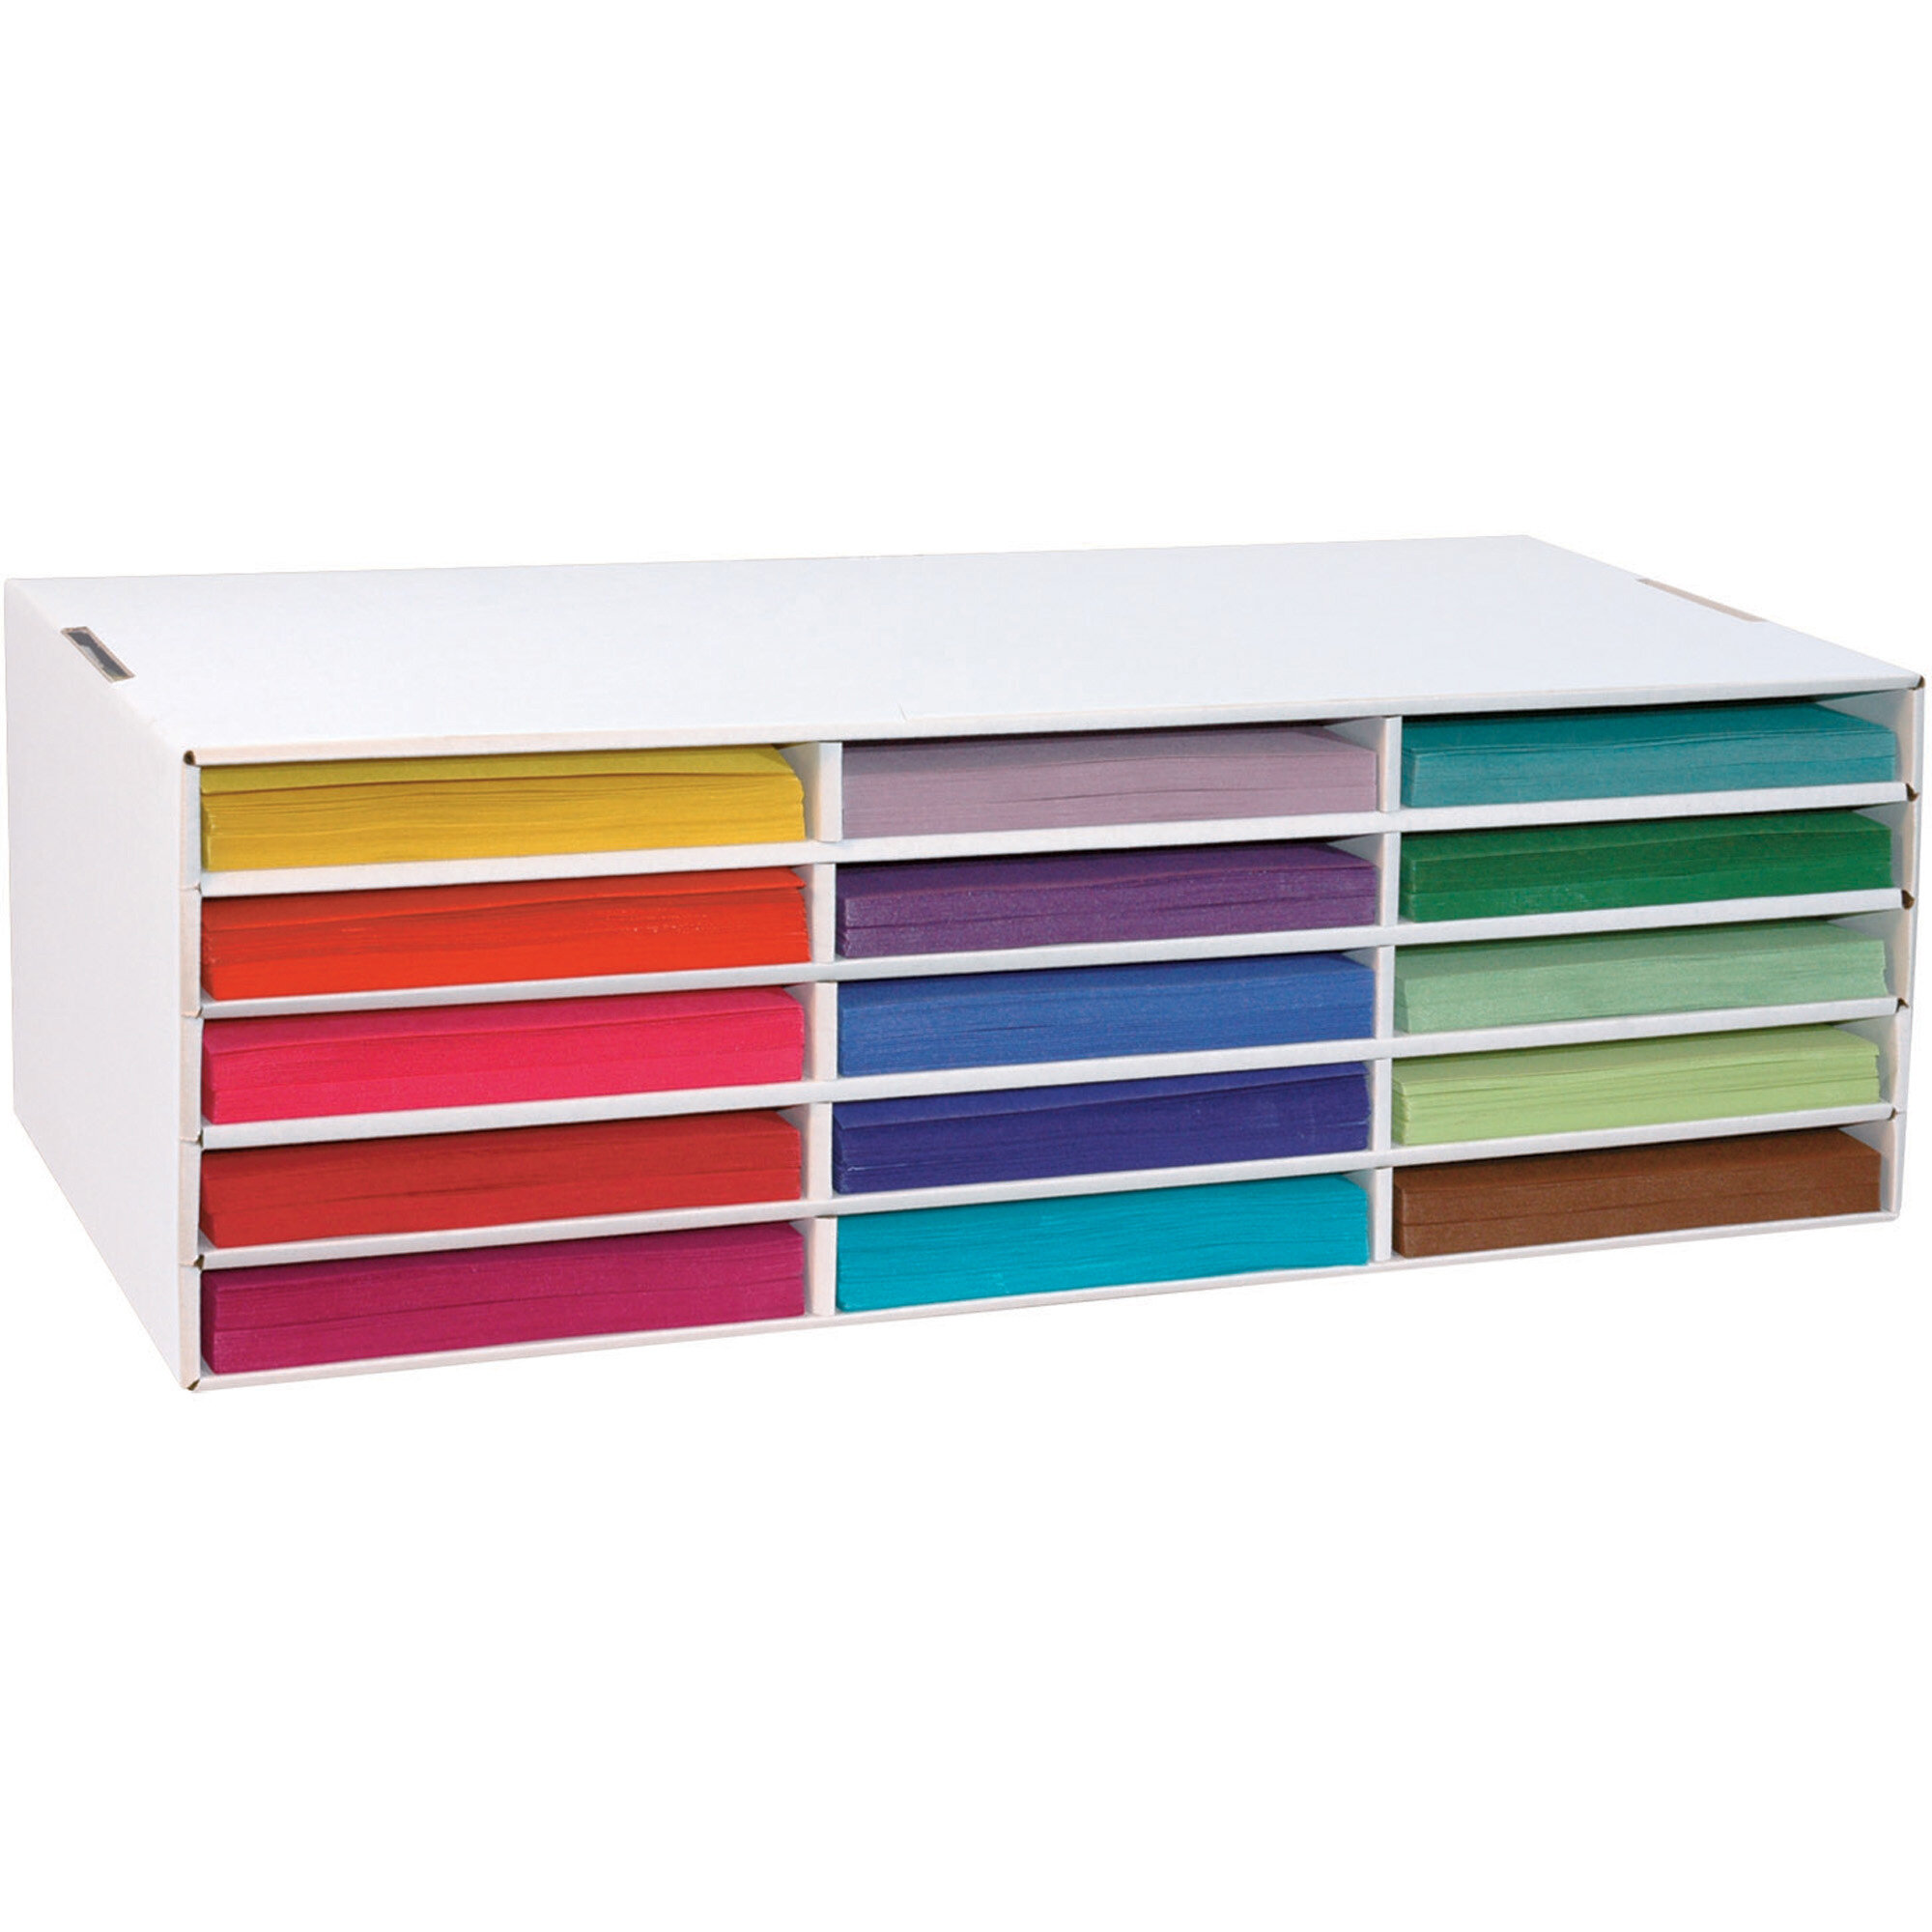 Cardboard Shelf Organizer for Homeschool, Cardboard Boxes to Cupboard  Organizer